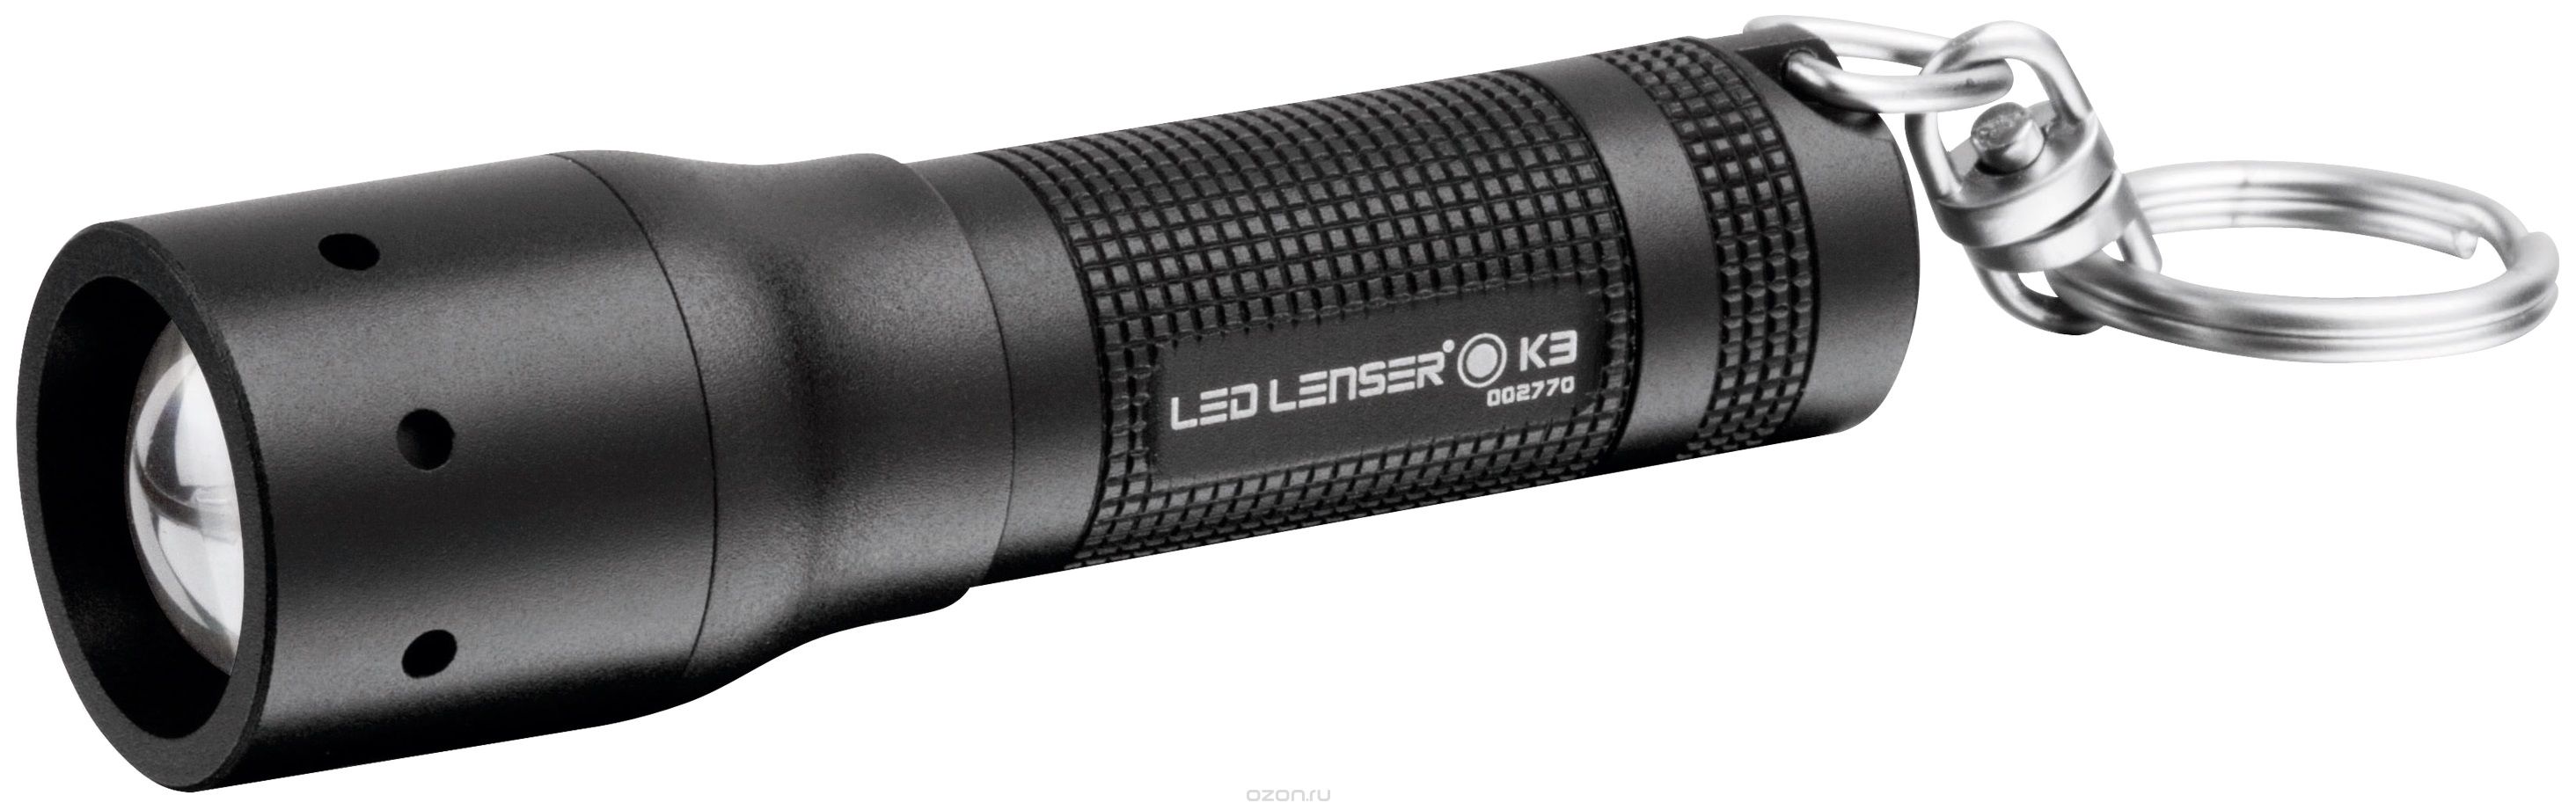 - Led Lenser K3